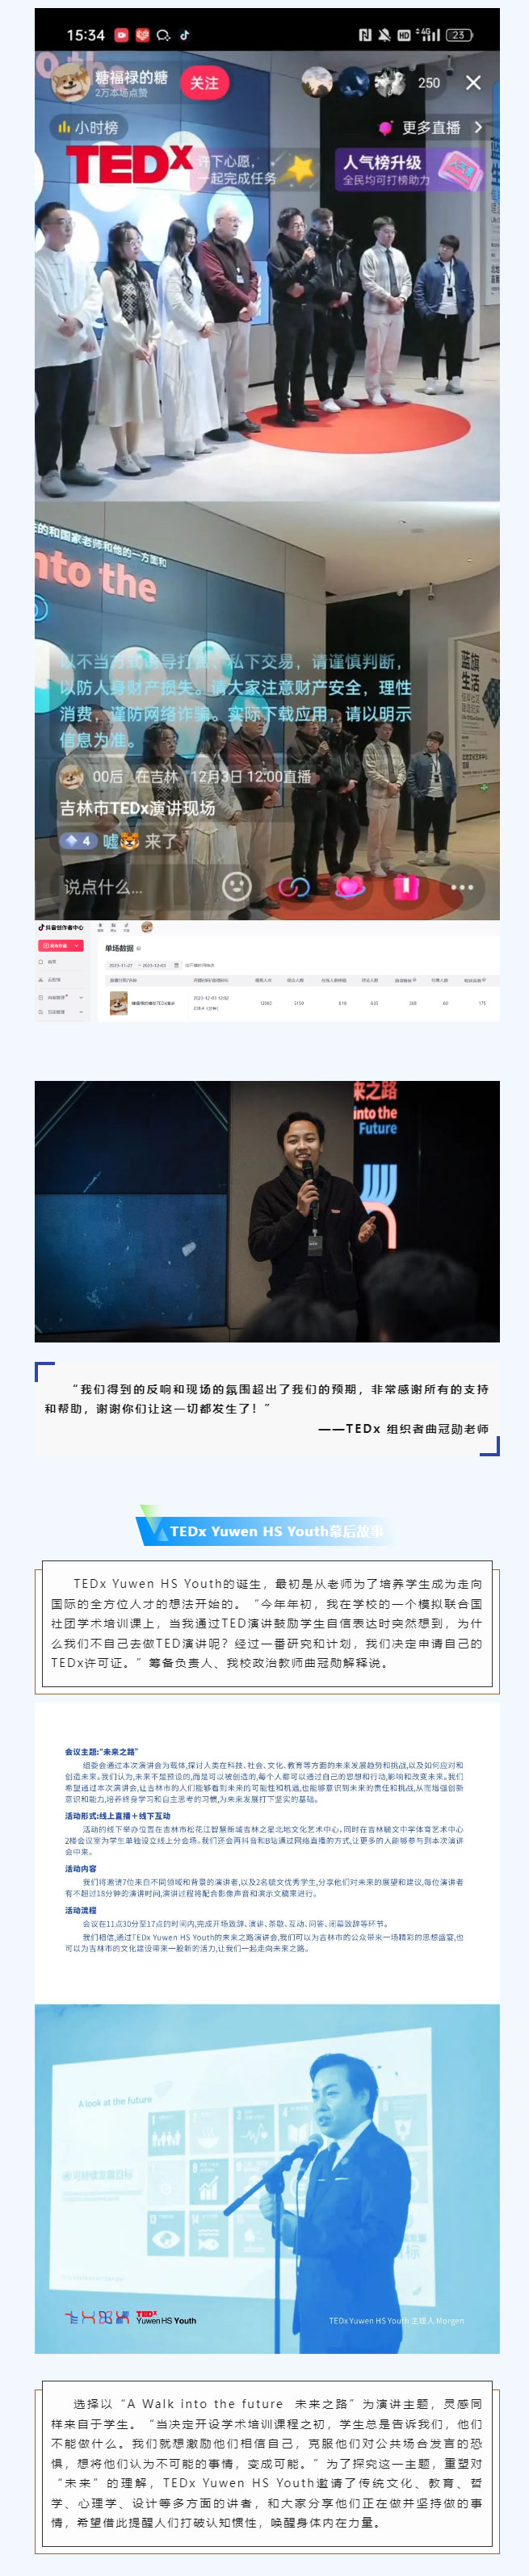 【毓见】TEDx演讲会-_-TEDx-Yuwen-HS-Youth_08.jpg